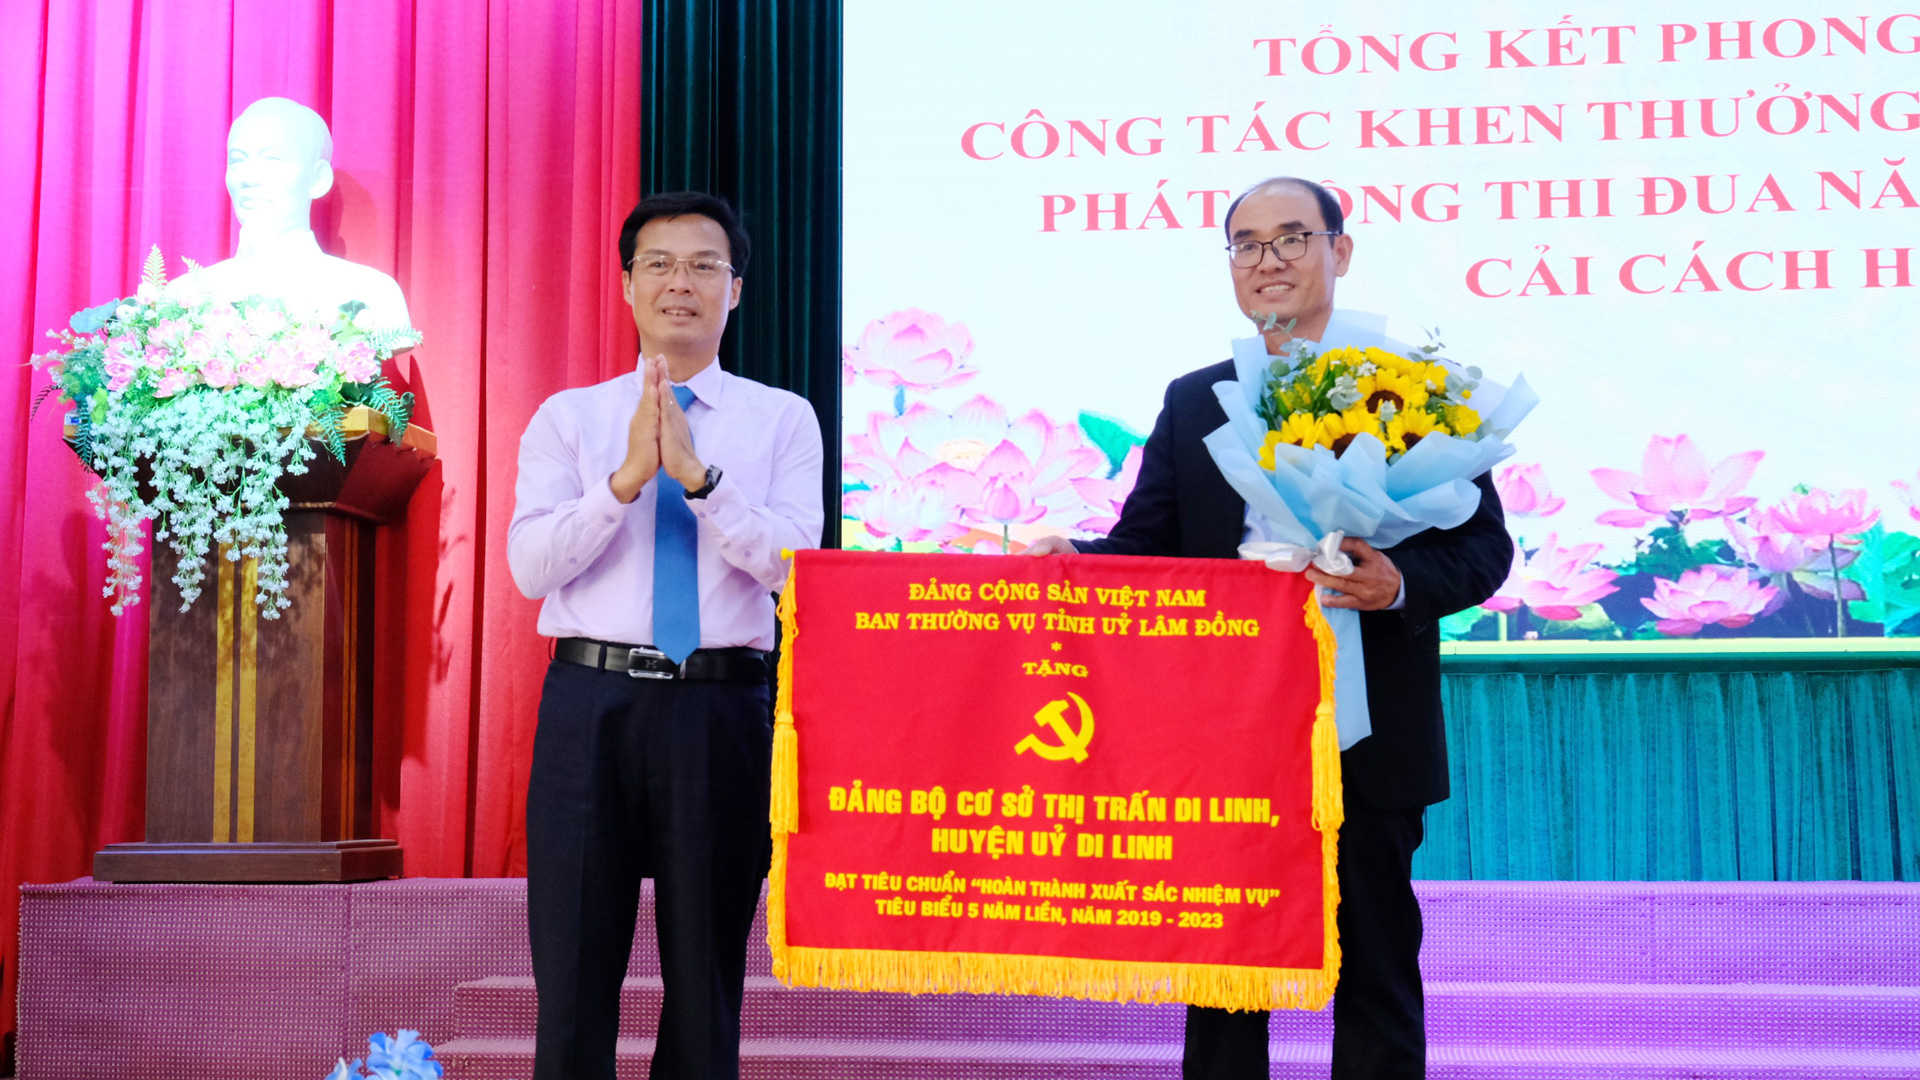 Đảng bộ thị trấn Di Linh là một trong 12 
tổ chức cơ sở đảng thuộc Đảng bộ huyện Di Linh hoàn thành xuất sắc nhiệm vụ năm 2023